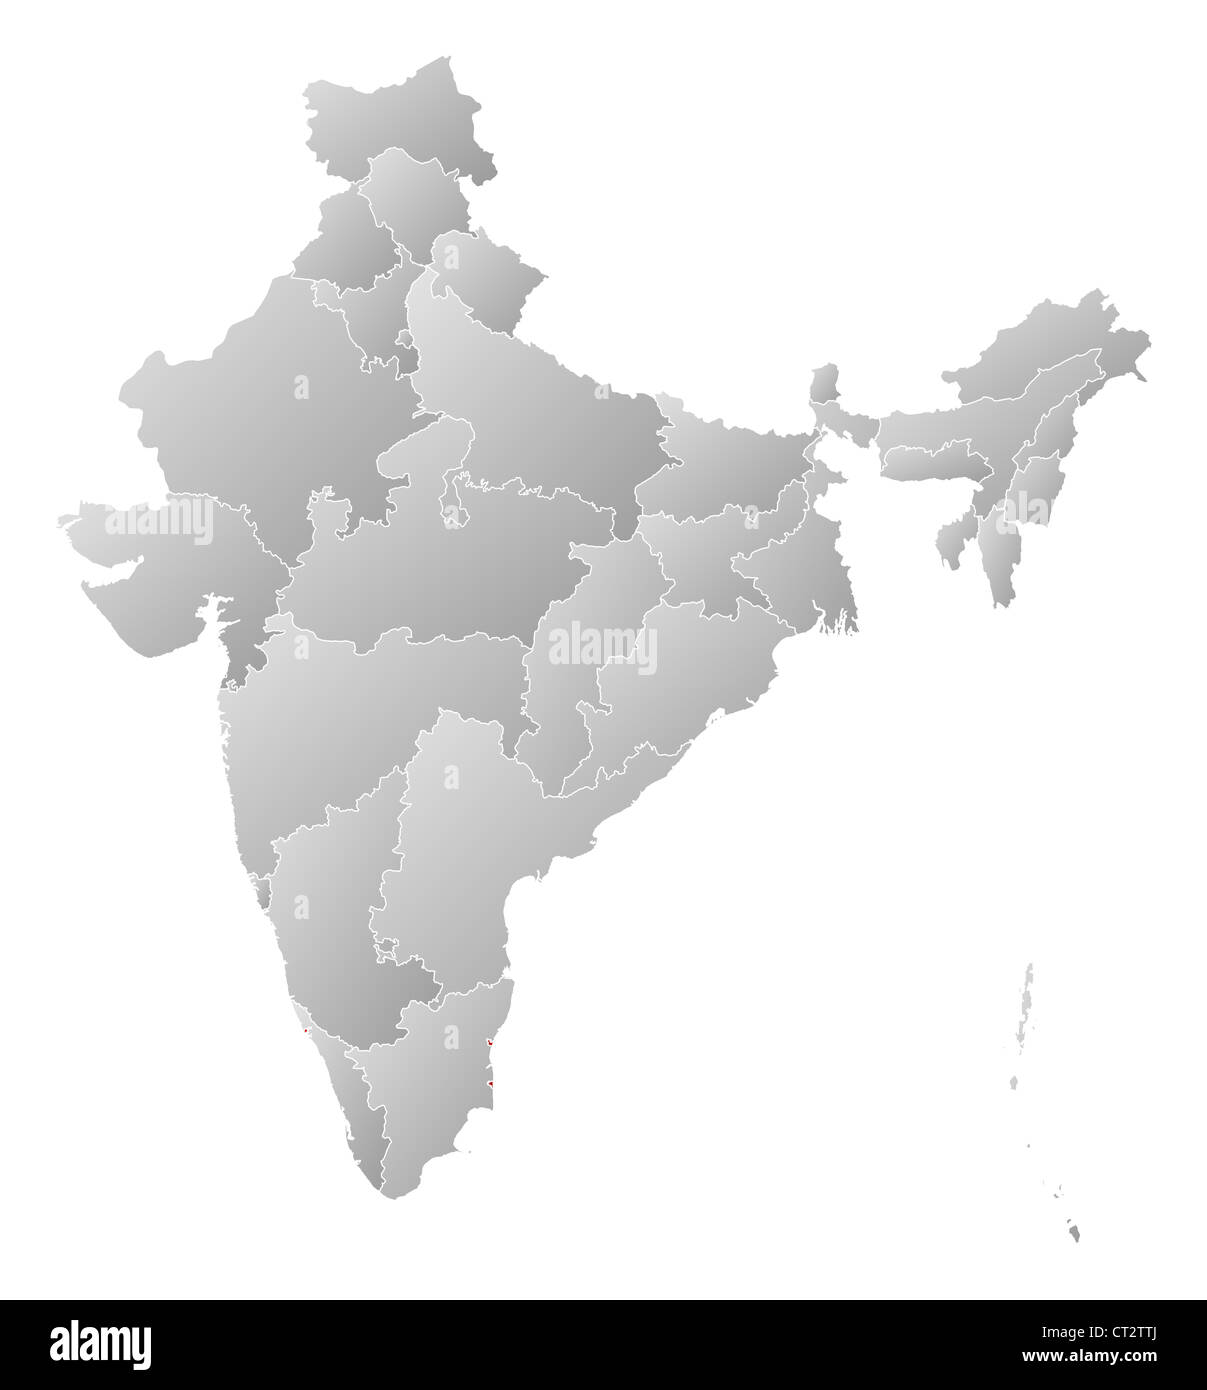 Mappa politico dell'India con i vari Stati in cui Puducherry è evidenziata. Foto Stock